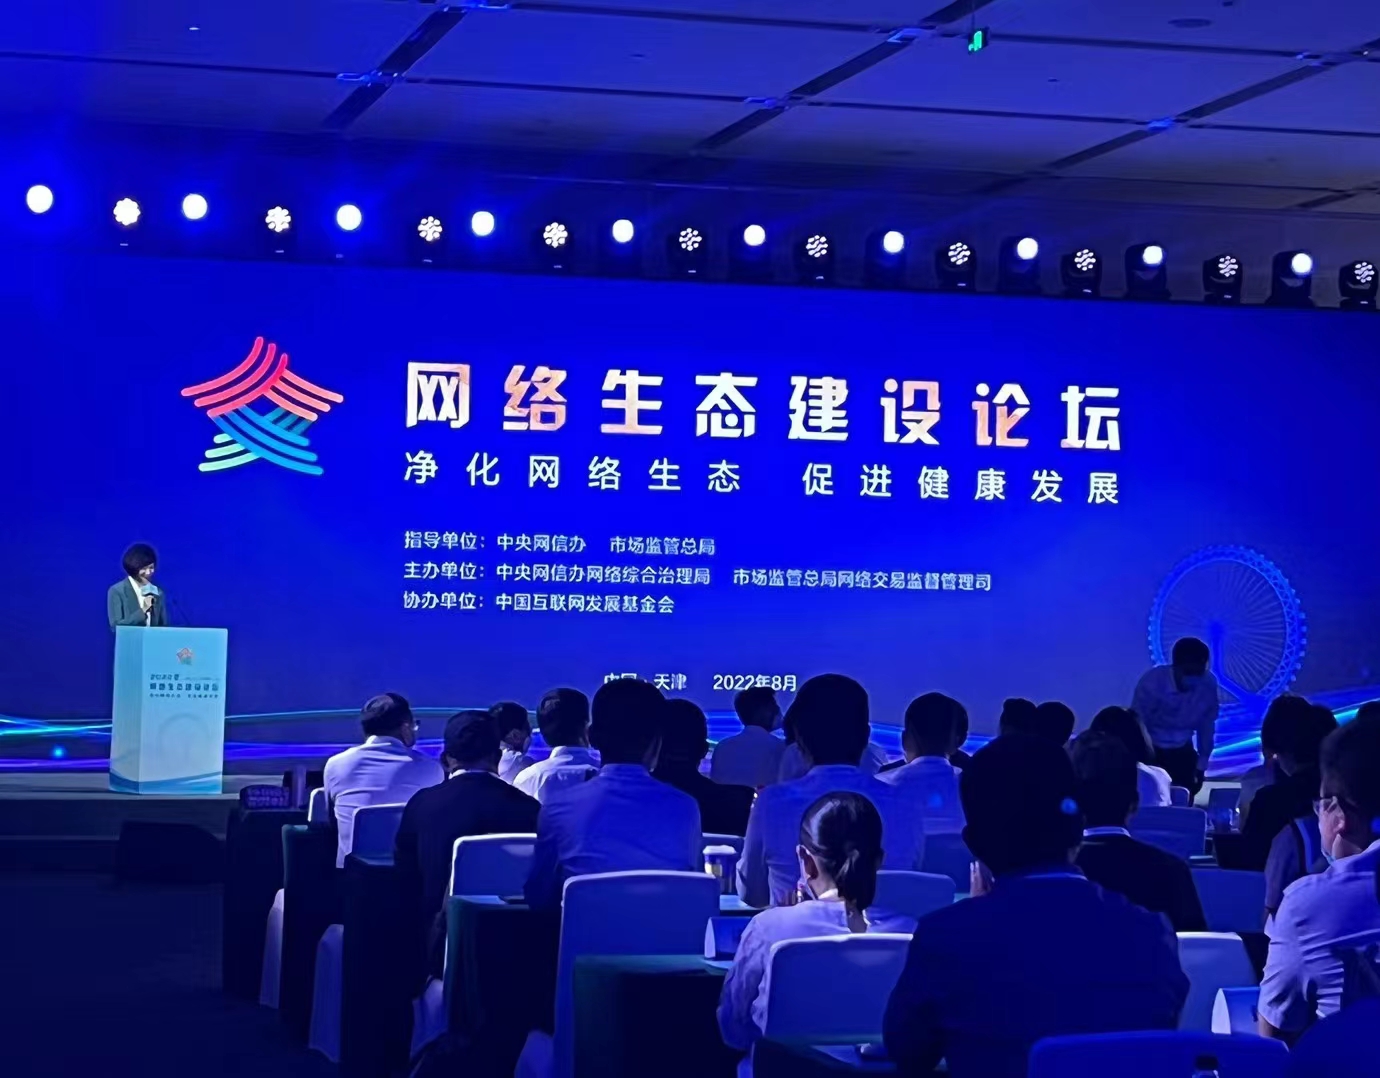 2022年中國網路文明大會網路生態建設論壇